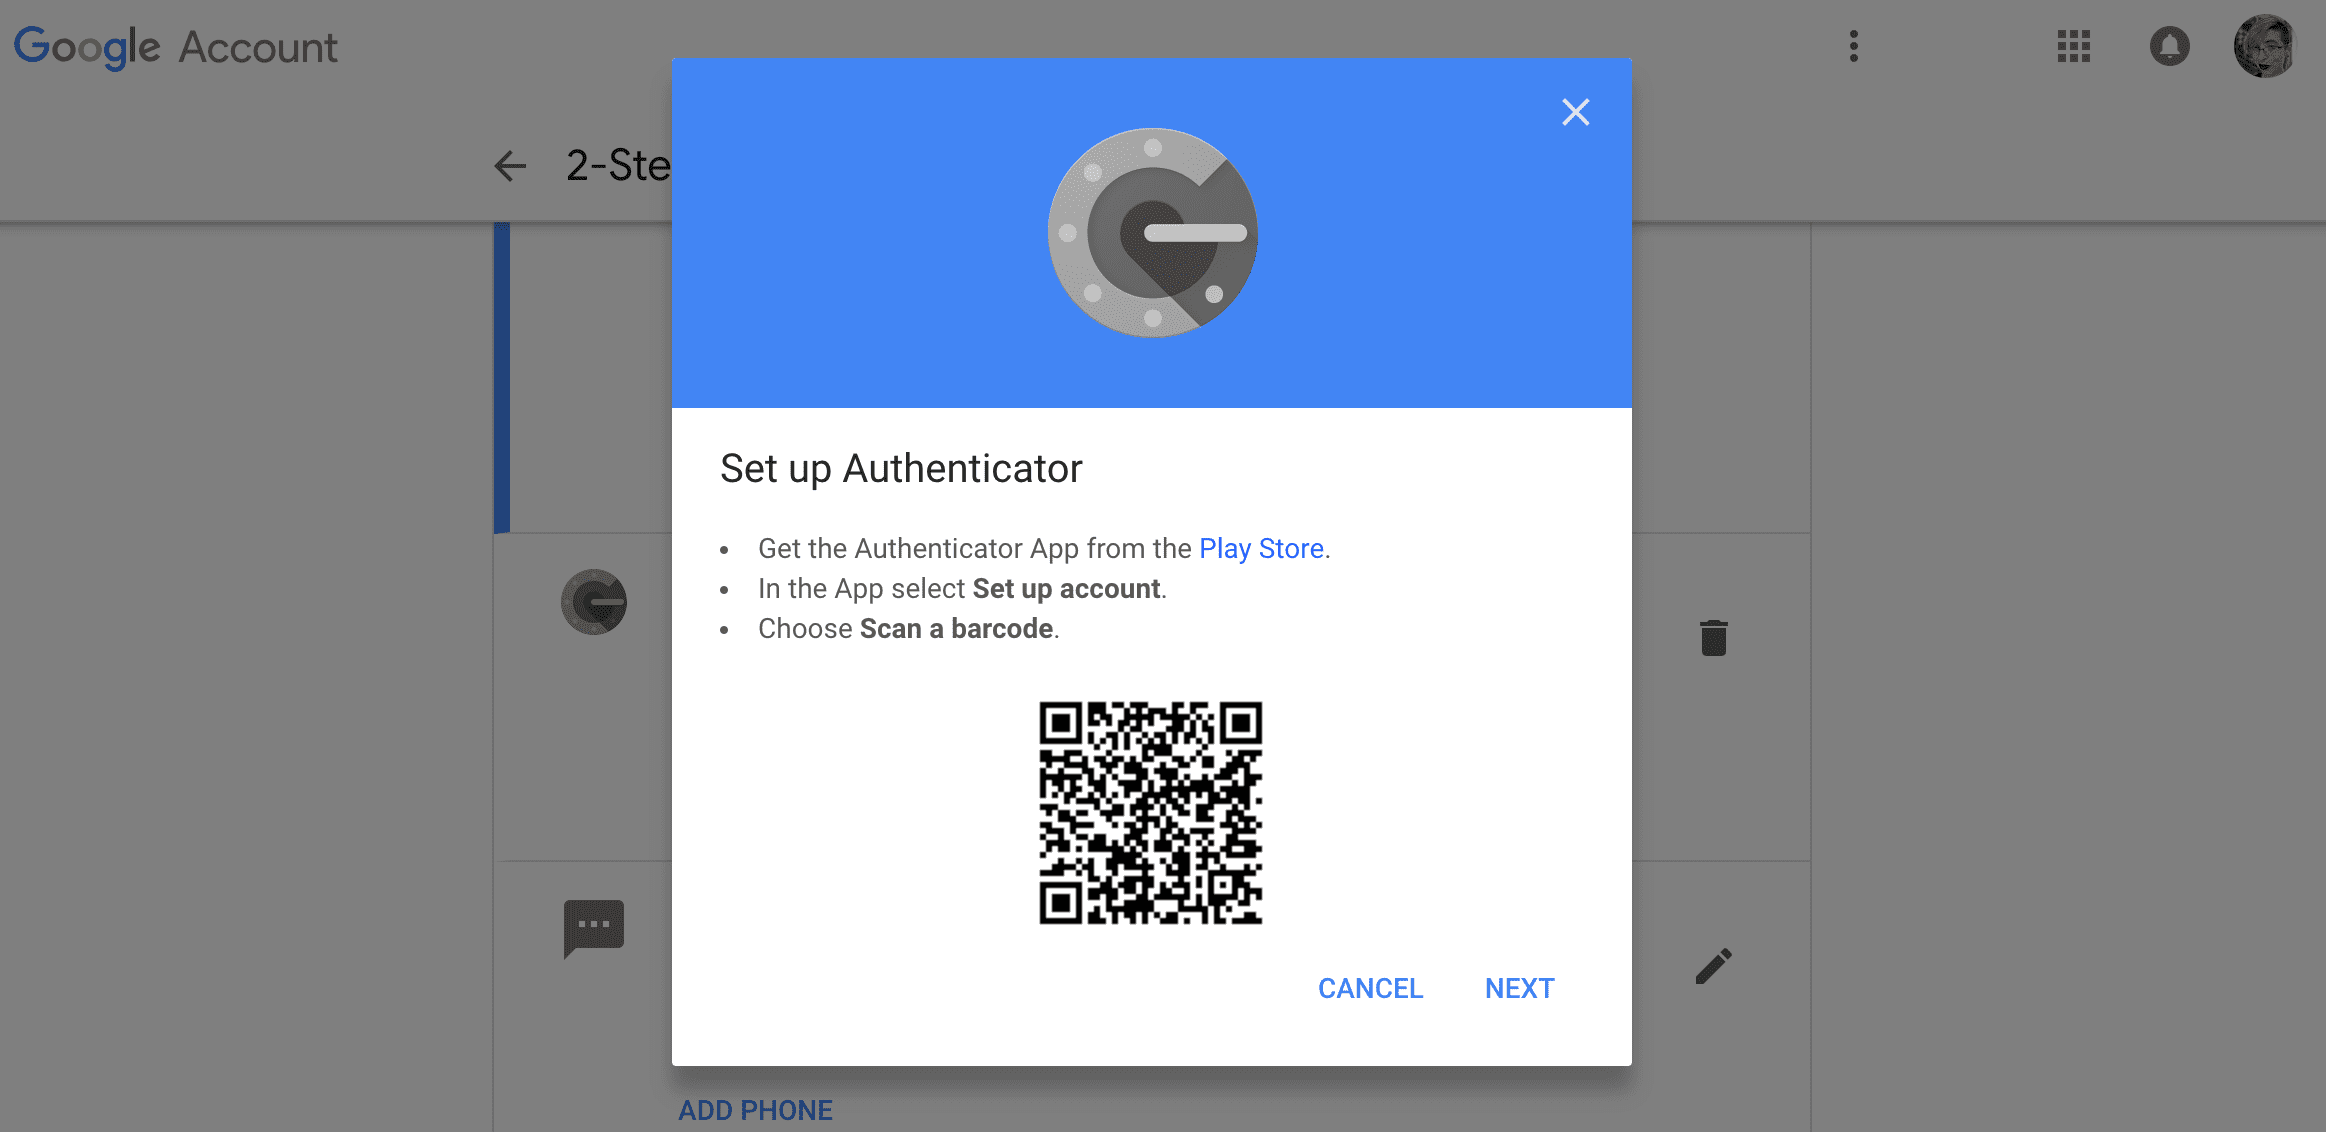 В Google Authenticator есть экран с дальнейшими указаниями по настройке приложения на новом телефоне.